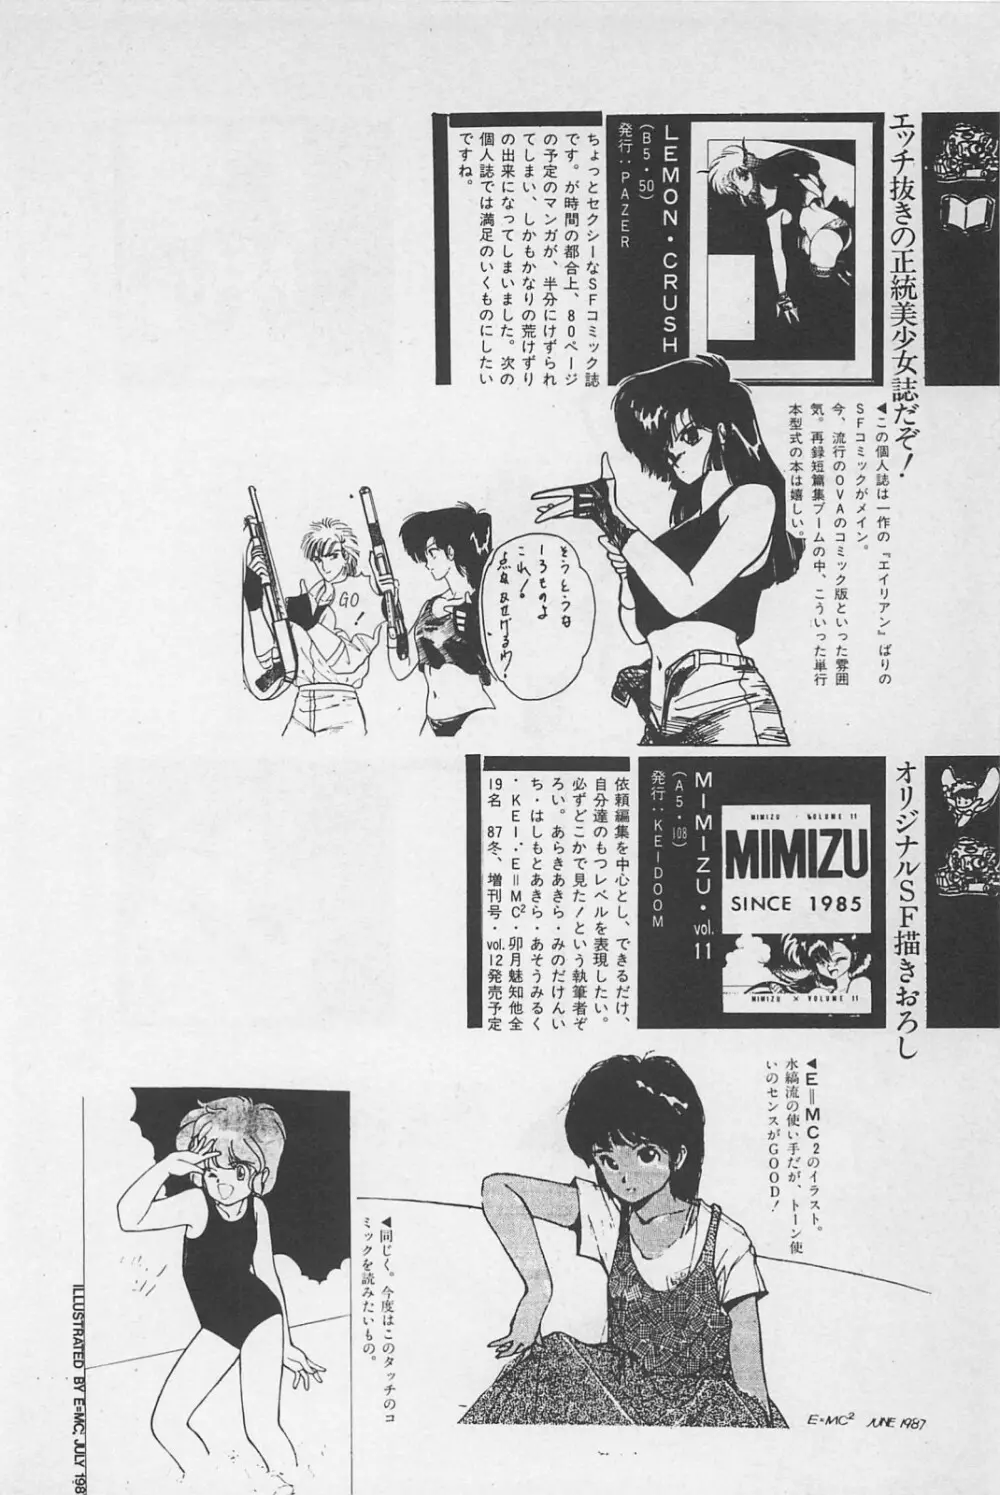 美少女症候群 1985 58ページ